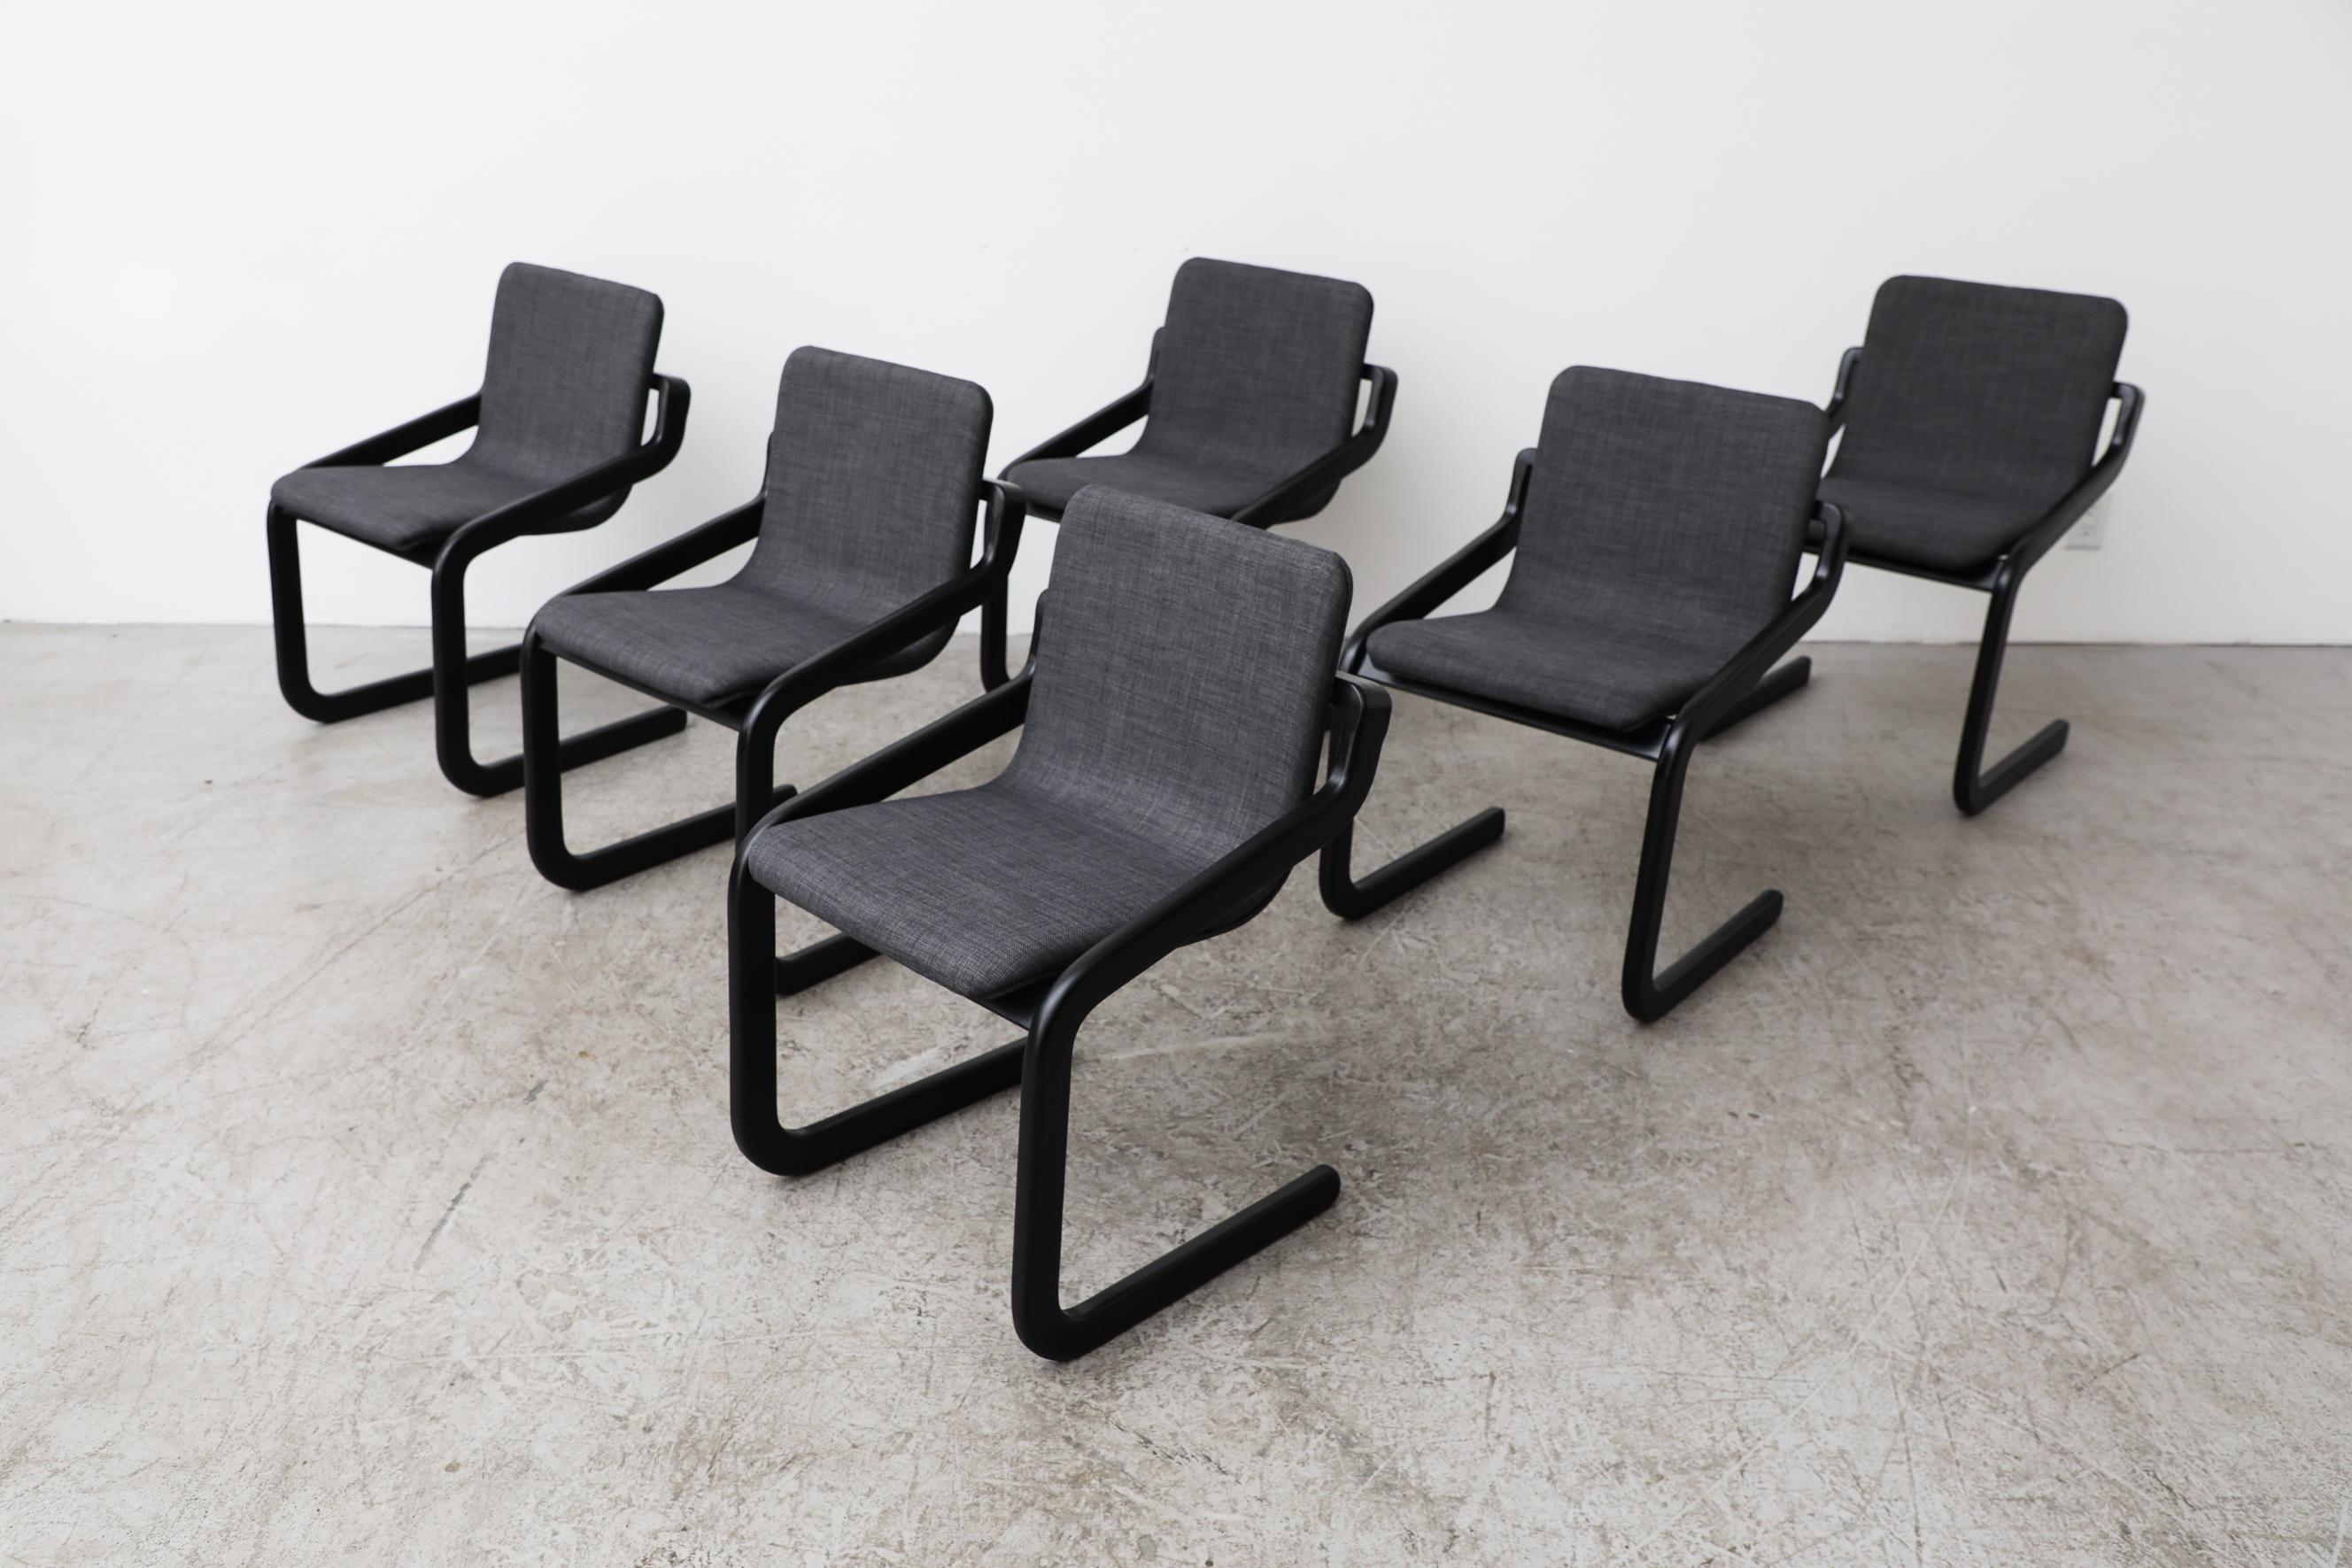 Set aus 6 Mod-Freischwingern mit schwarzem Gestell und neu gepolsterten Sitzen in Dunkelgrau. Die Sitzbreite beträgt 16,75